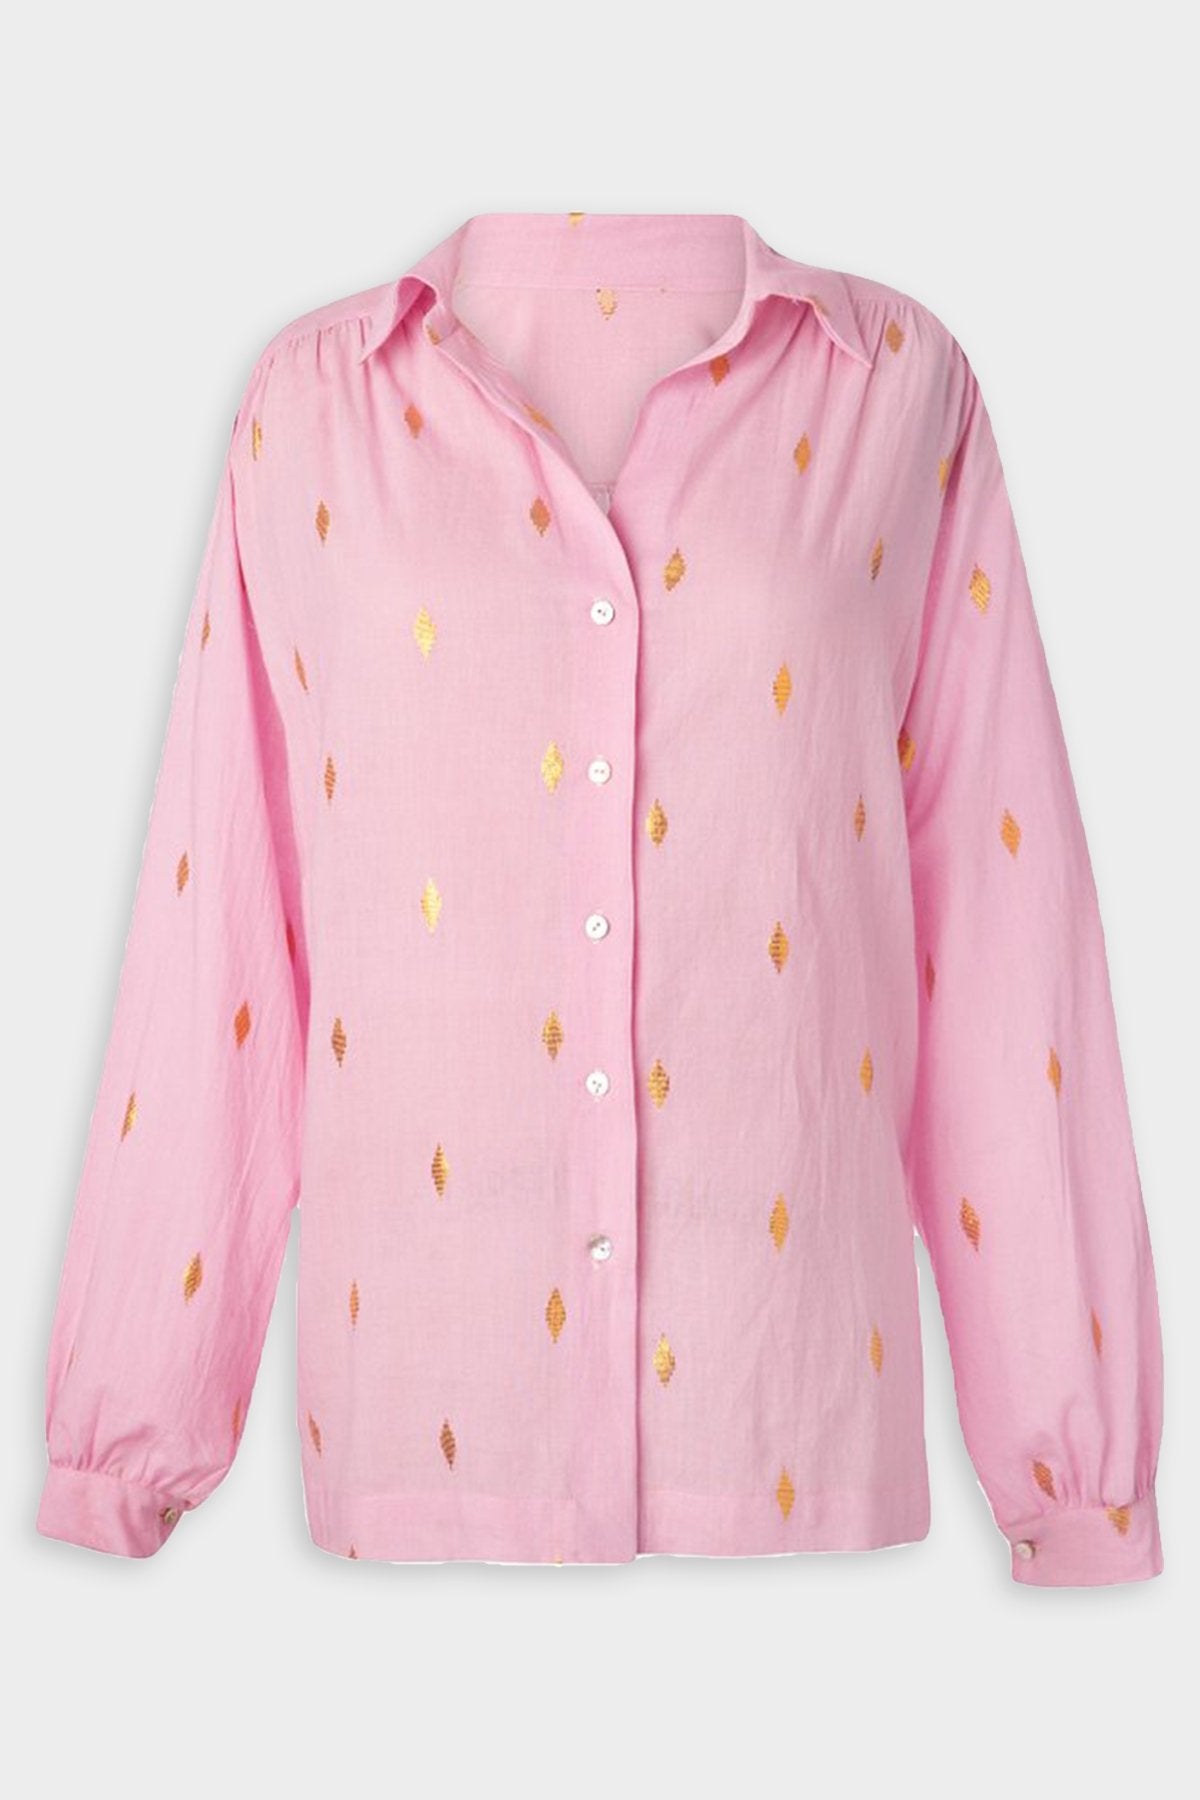 Antigone Pink Jamdani Shirt - shop-olivia.com